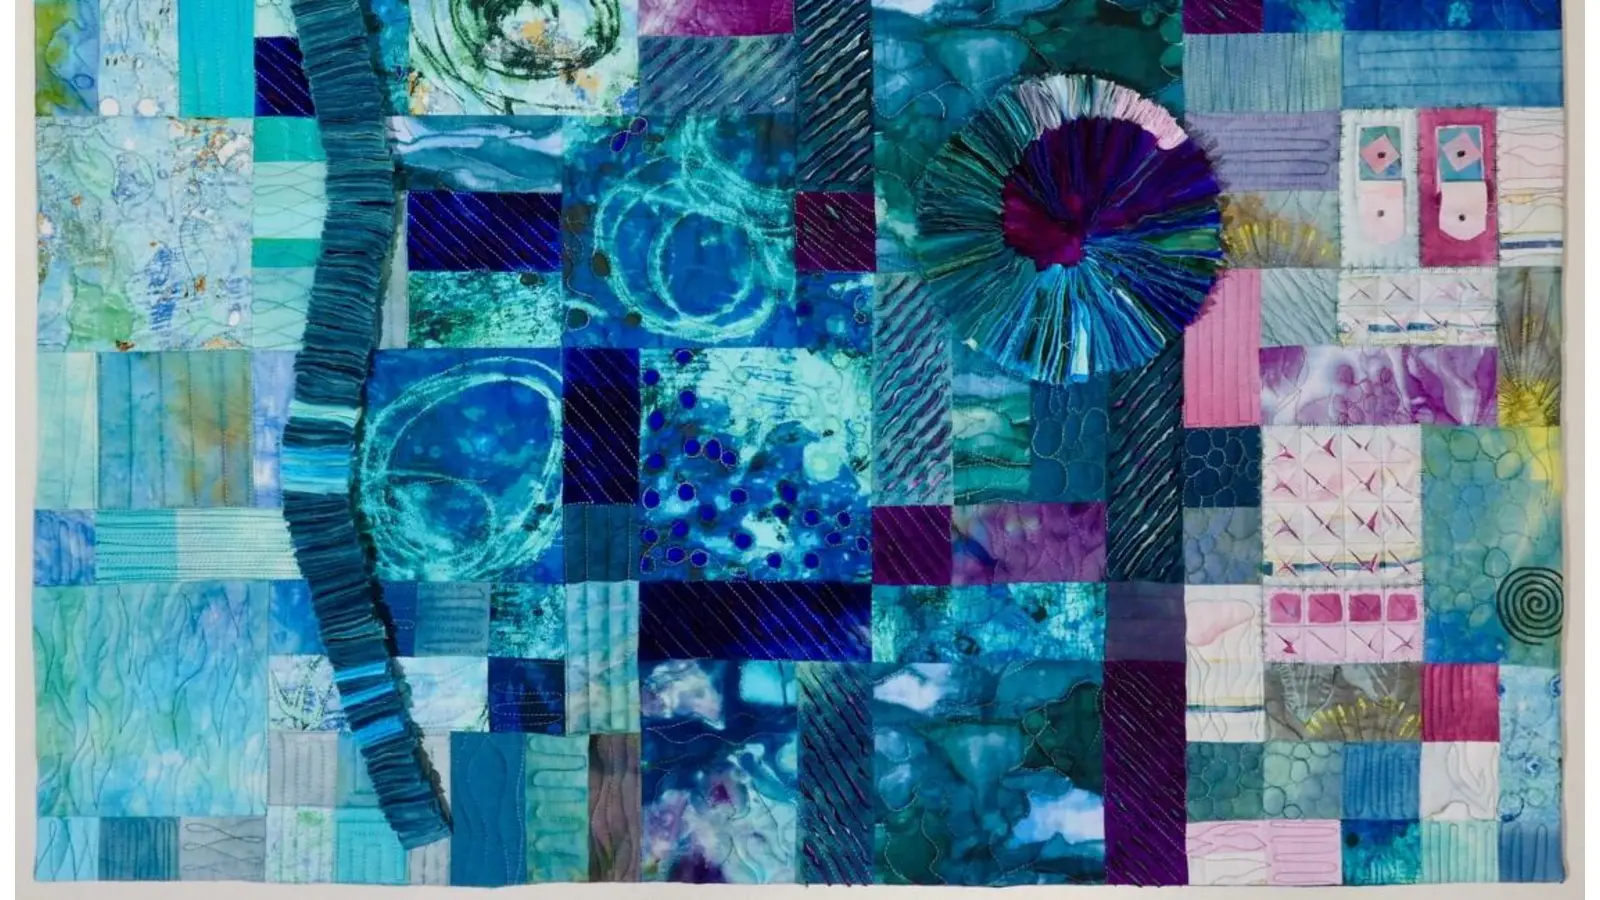 Teil der Ausstellung: Textile Arbeiten in Form von Quilts. (Foto: privat)